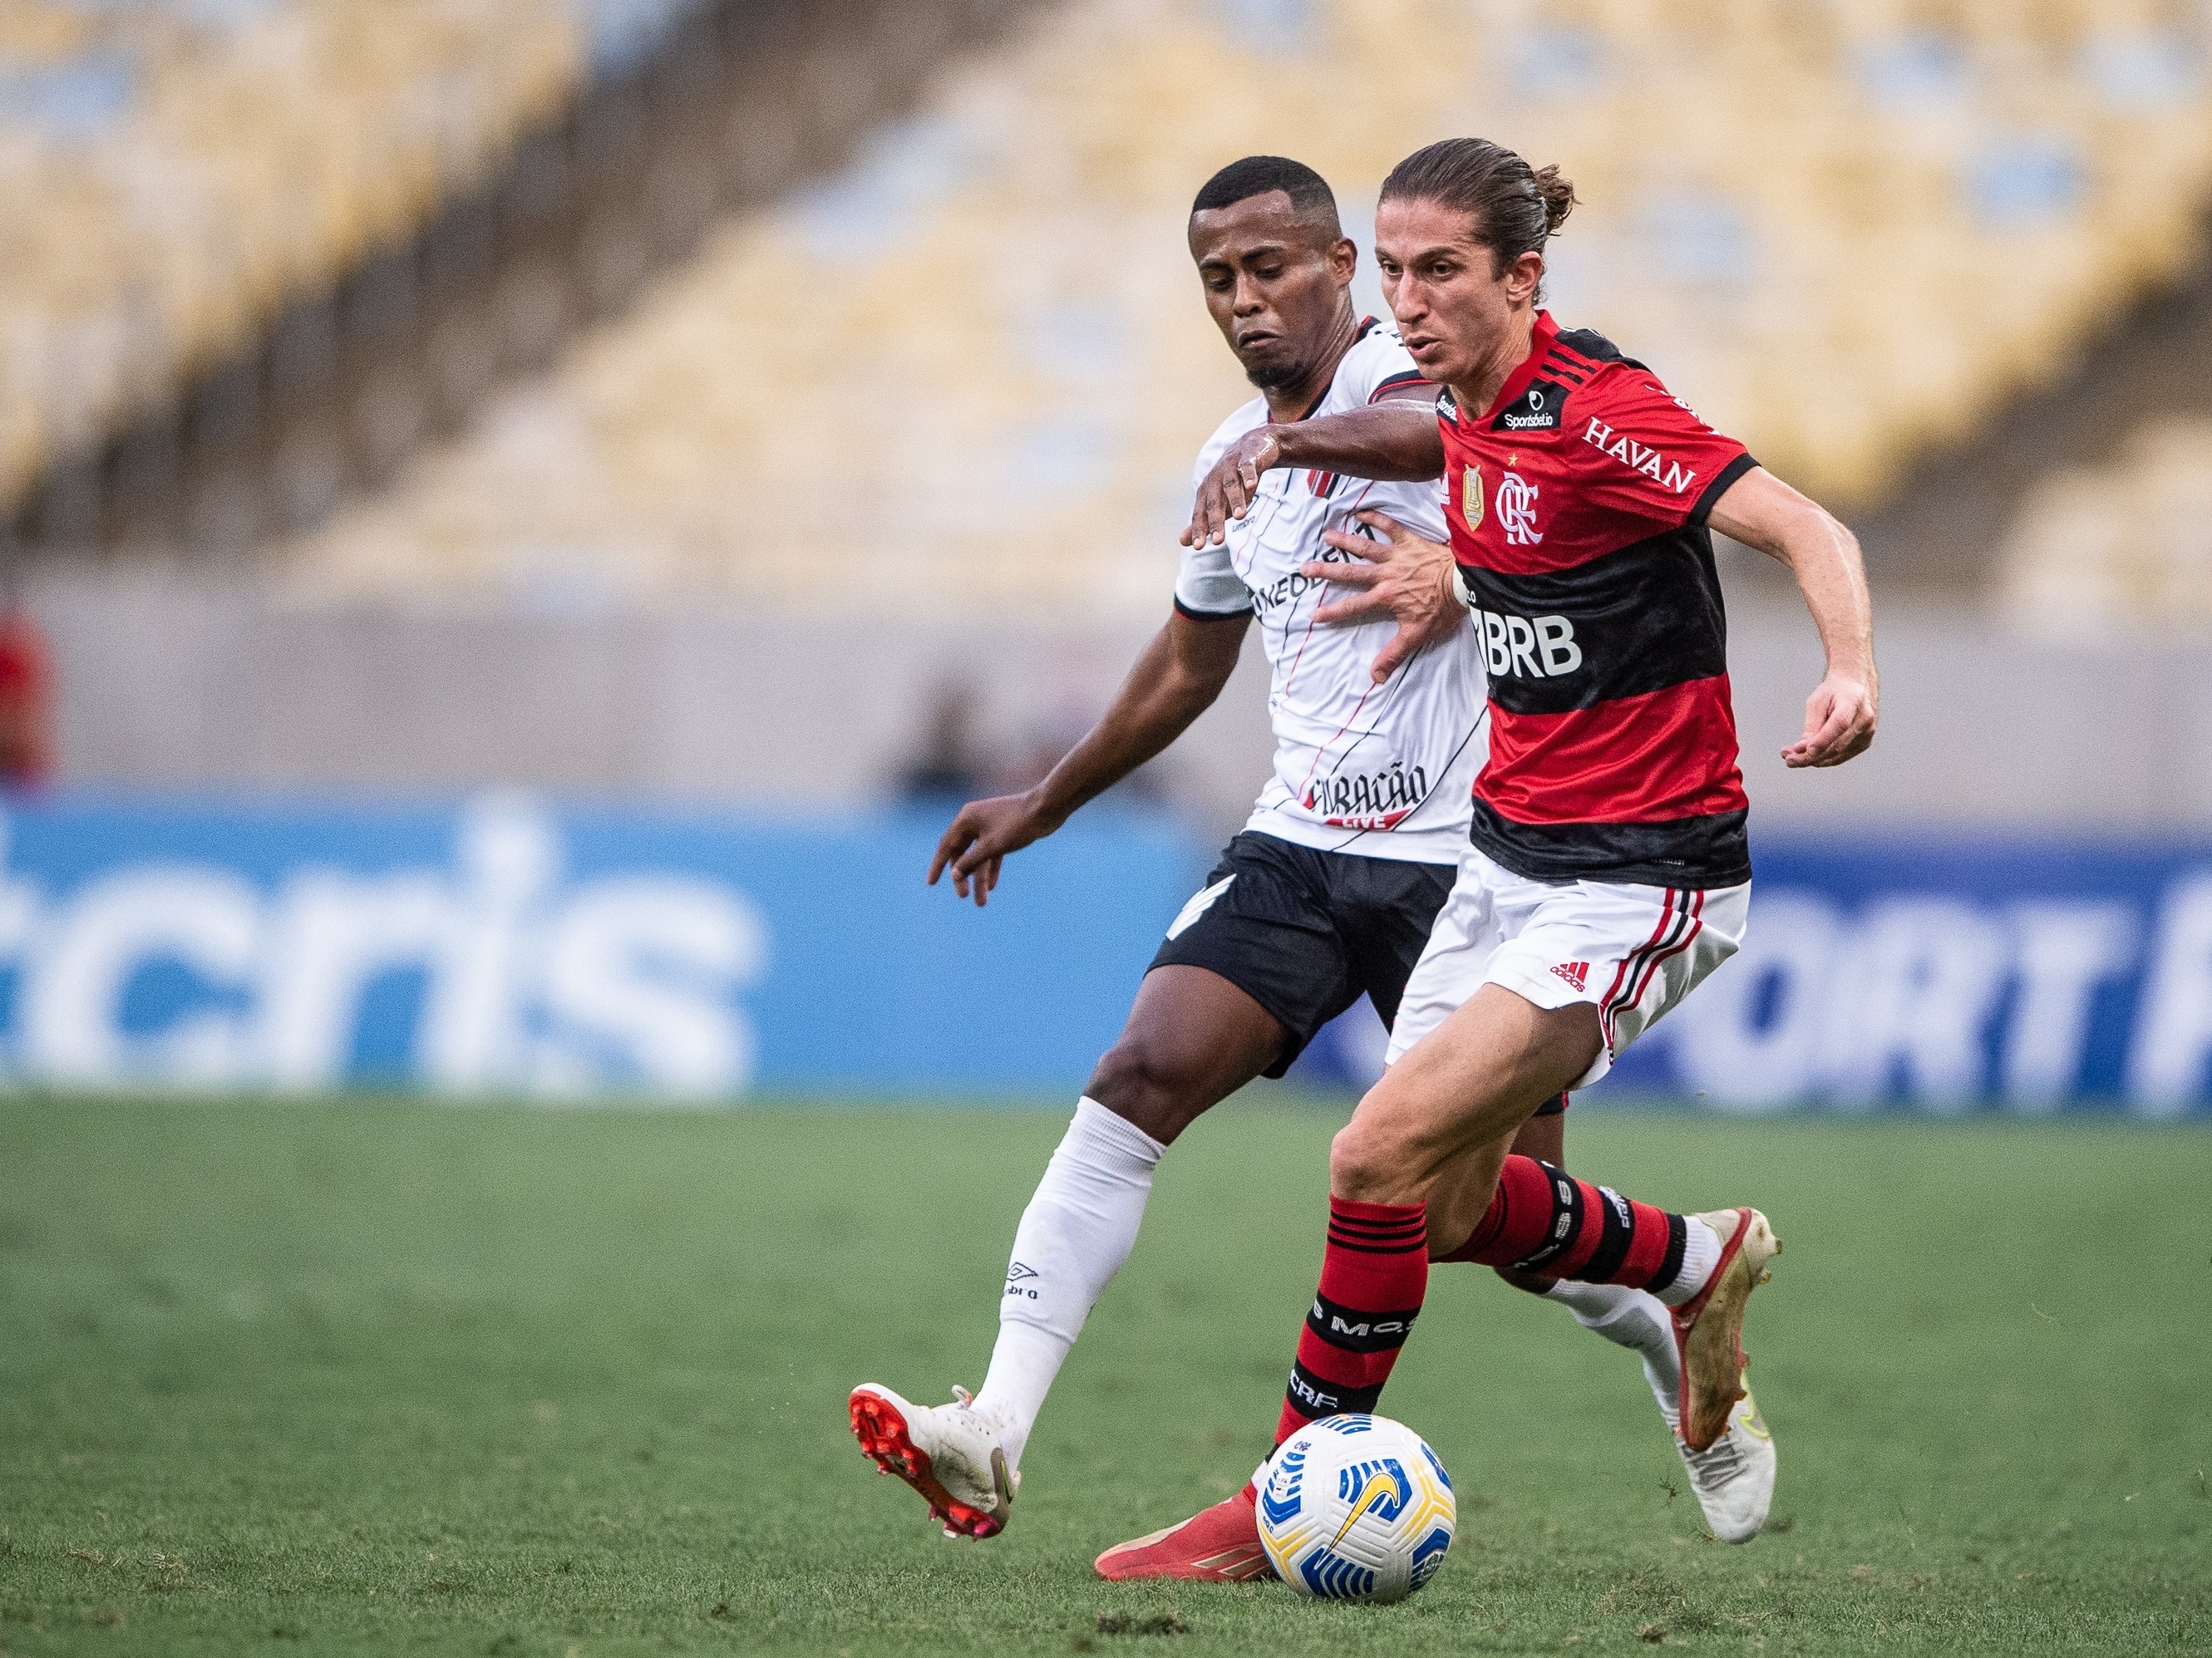 Canal português transmitirá todos jogos do Flamengo pelo Brasileirão -  Coluna do Fla